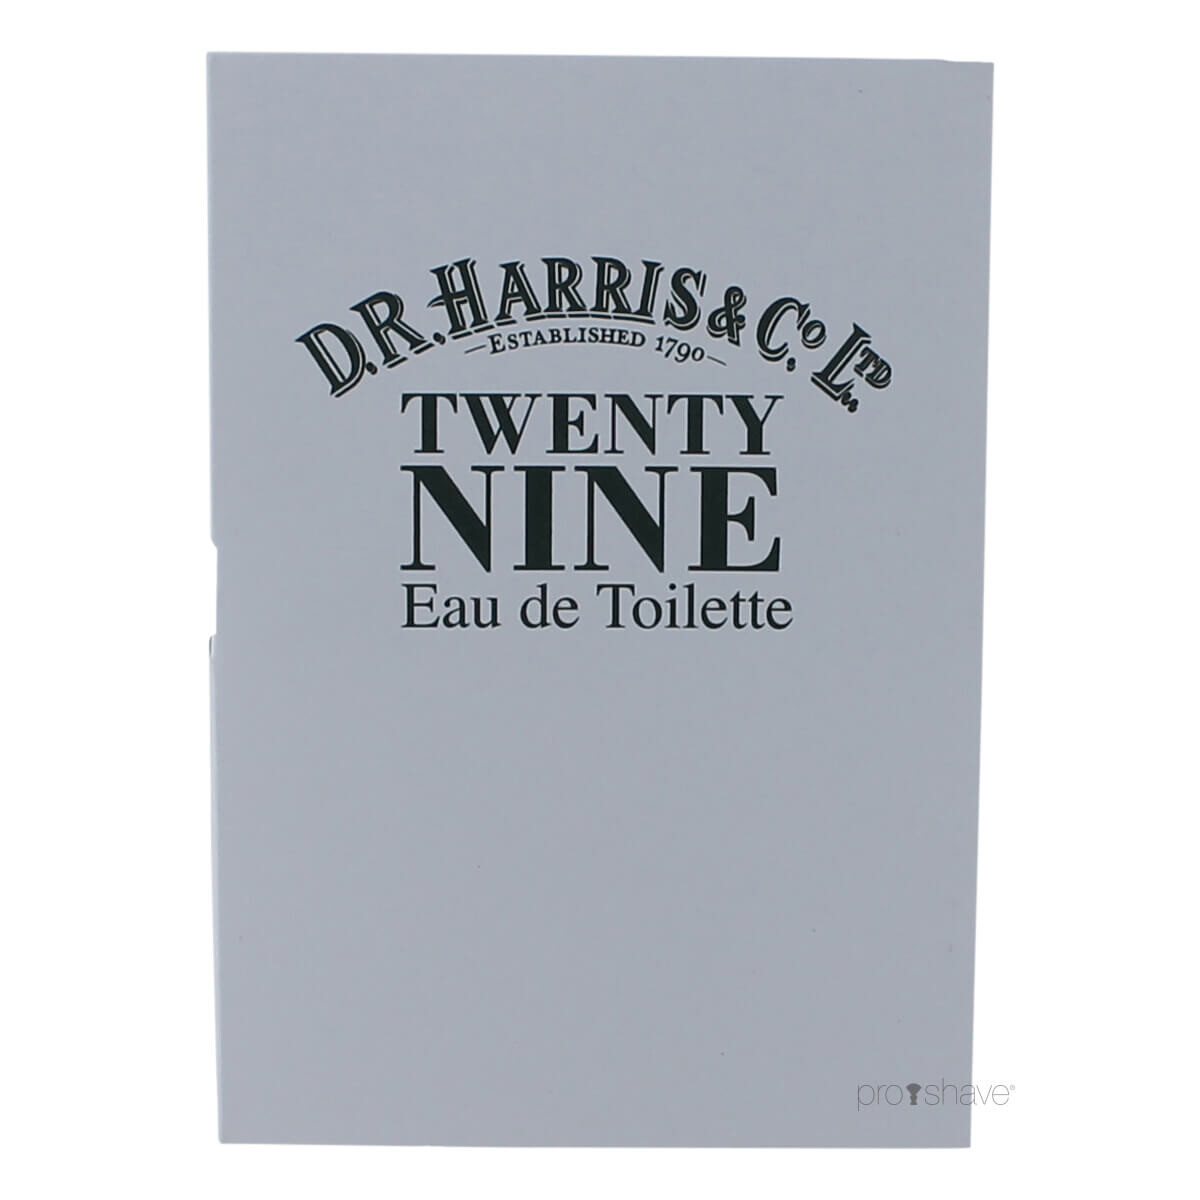 Se D.R. Harris Twenty Nine Eau de Toilette, SAMPLE, 2 ml. hos Proshave